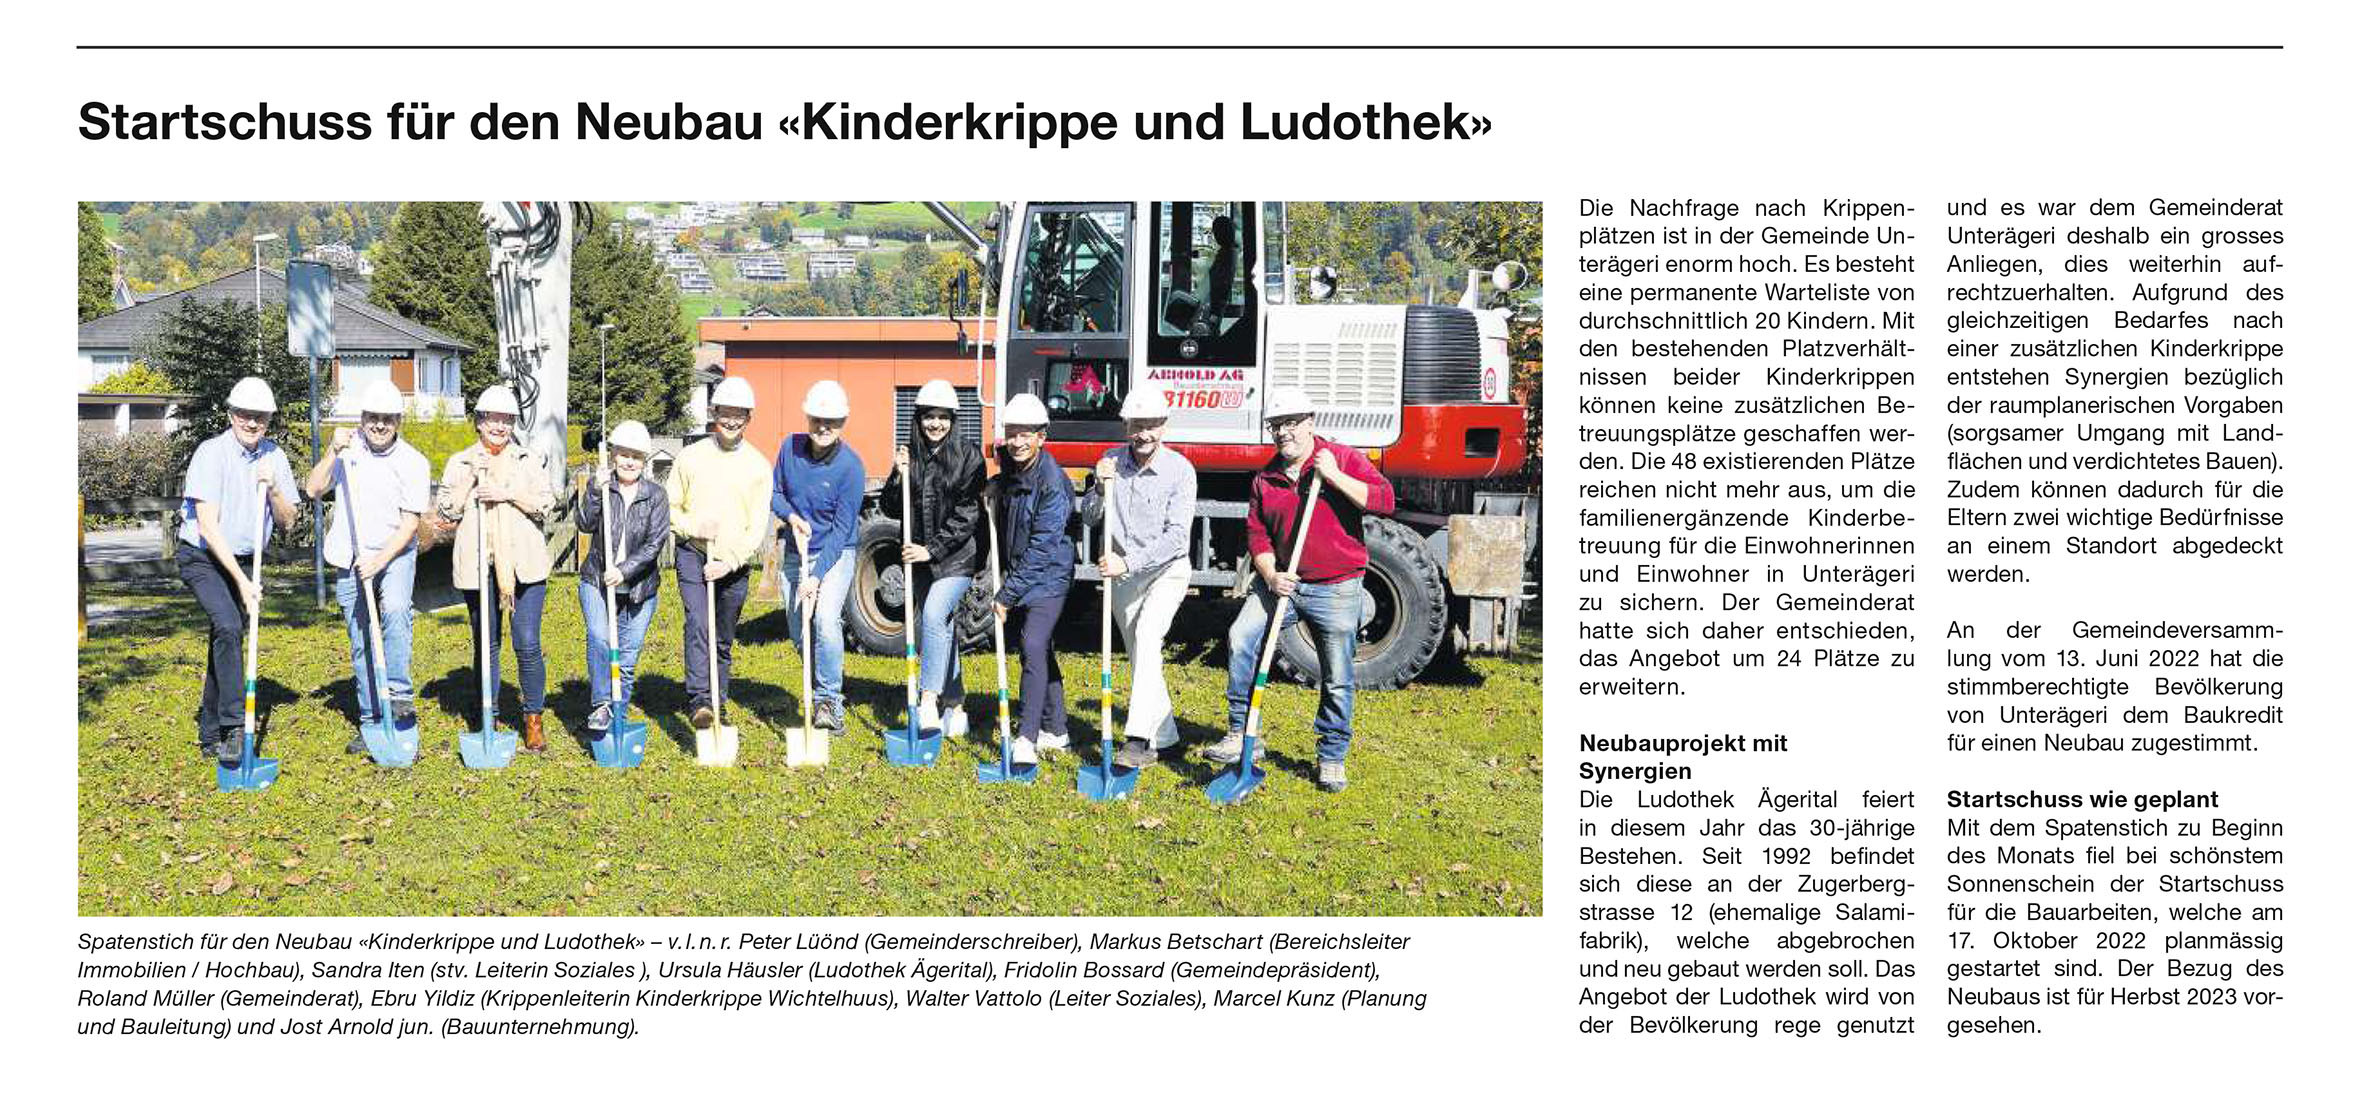 Startschuss für den Neubau "Kinderkrippe und Ludothek"